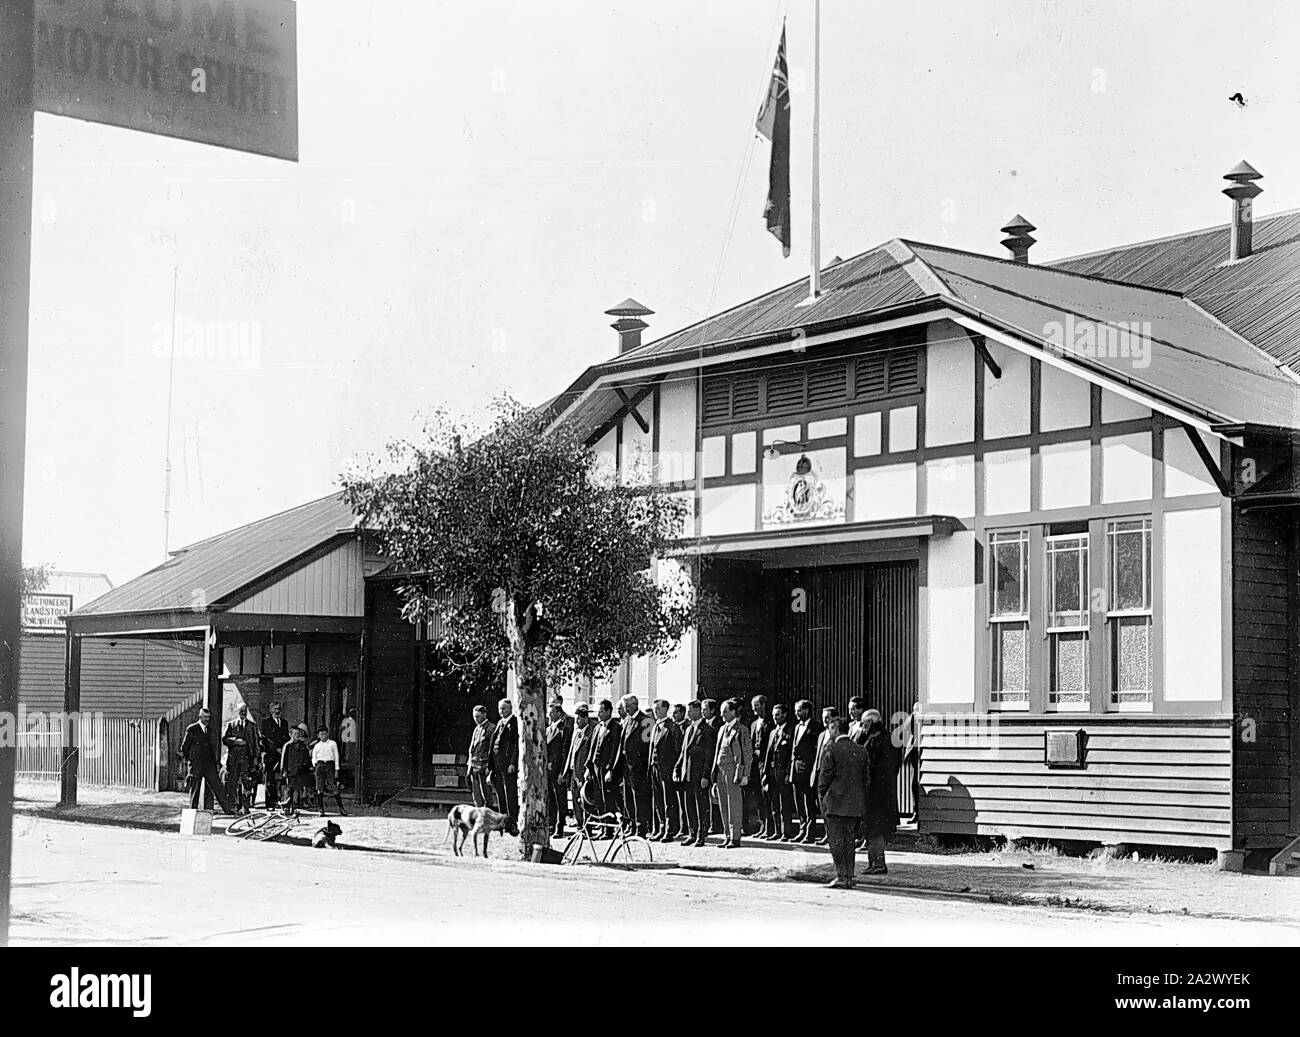 Negative - Donald, Victoria, ca. 1925, eine Zeremonie vor der Donald Memorial Hall. Es gibt eine Fahne auf Halbmast und die Männer, die alle in Zivil, stehen die Aufmerksamkeit mit sich. Möglicherweise Armistice Day Stockfoto